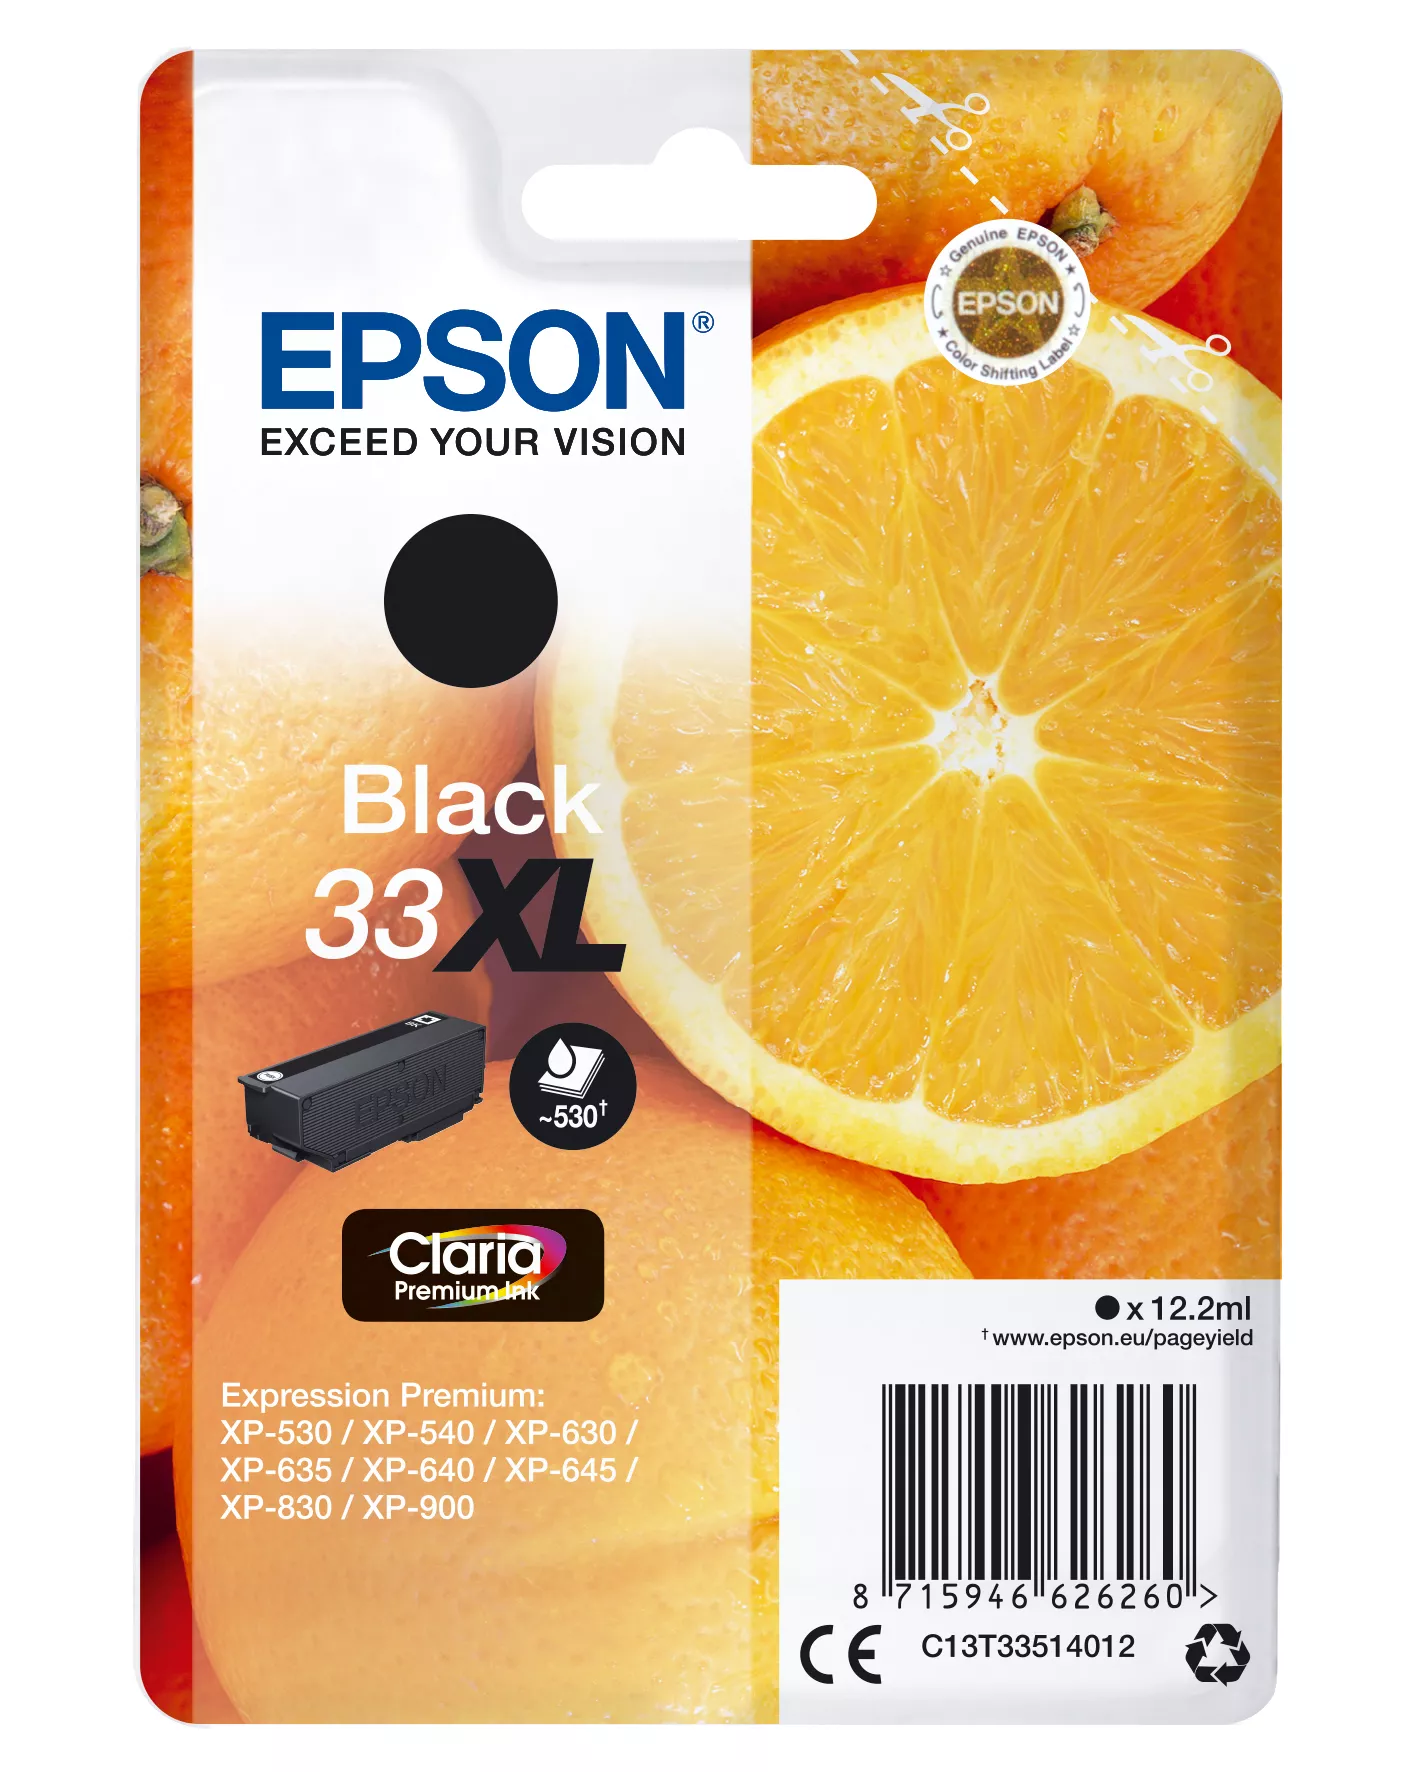 Achat EPSON Cartouche Oranges Encre Claria Premium Noir (XL - 8715946626277